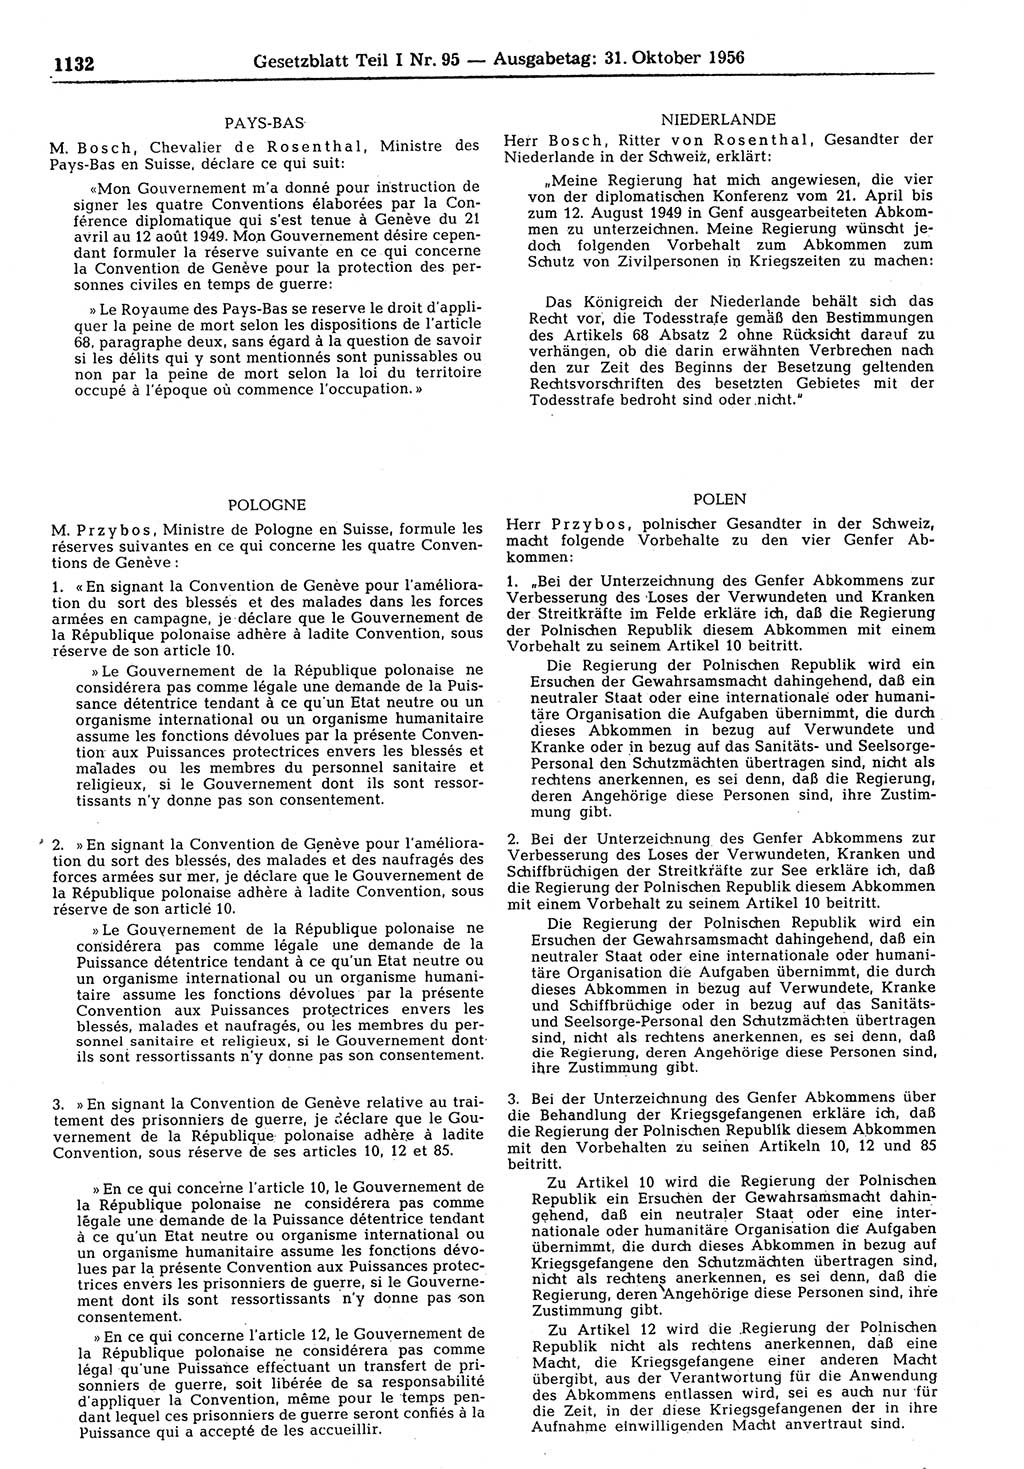 Gesetzblatt (GBl.) der Deutschen Demokratischen Republik (DDR) Teil Ⅰ 1956, Seite 1132 (GBl. DDR Ⅰ 1956, S. 1132)